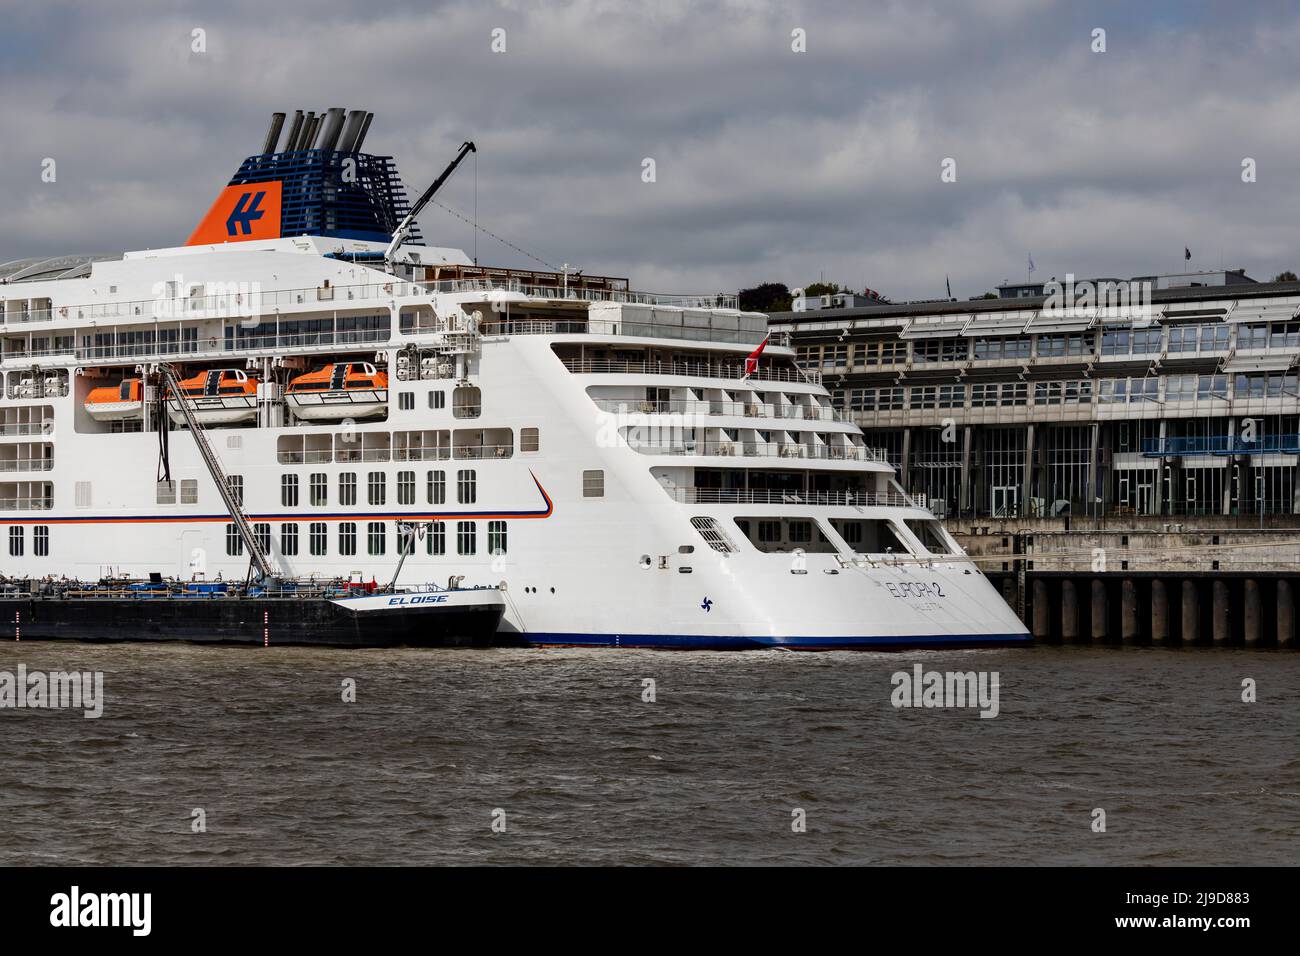 Amburgo, Germania - 5-3-2022: La poppa della nave da crociera Europa 2 mentre prende il carburante dalla nave bunker Eloise nel porto Foto Stock